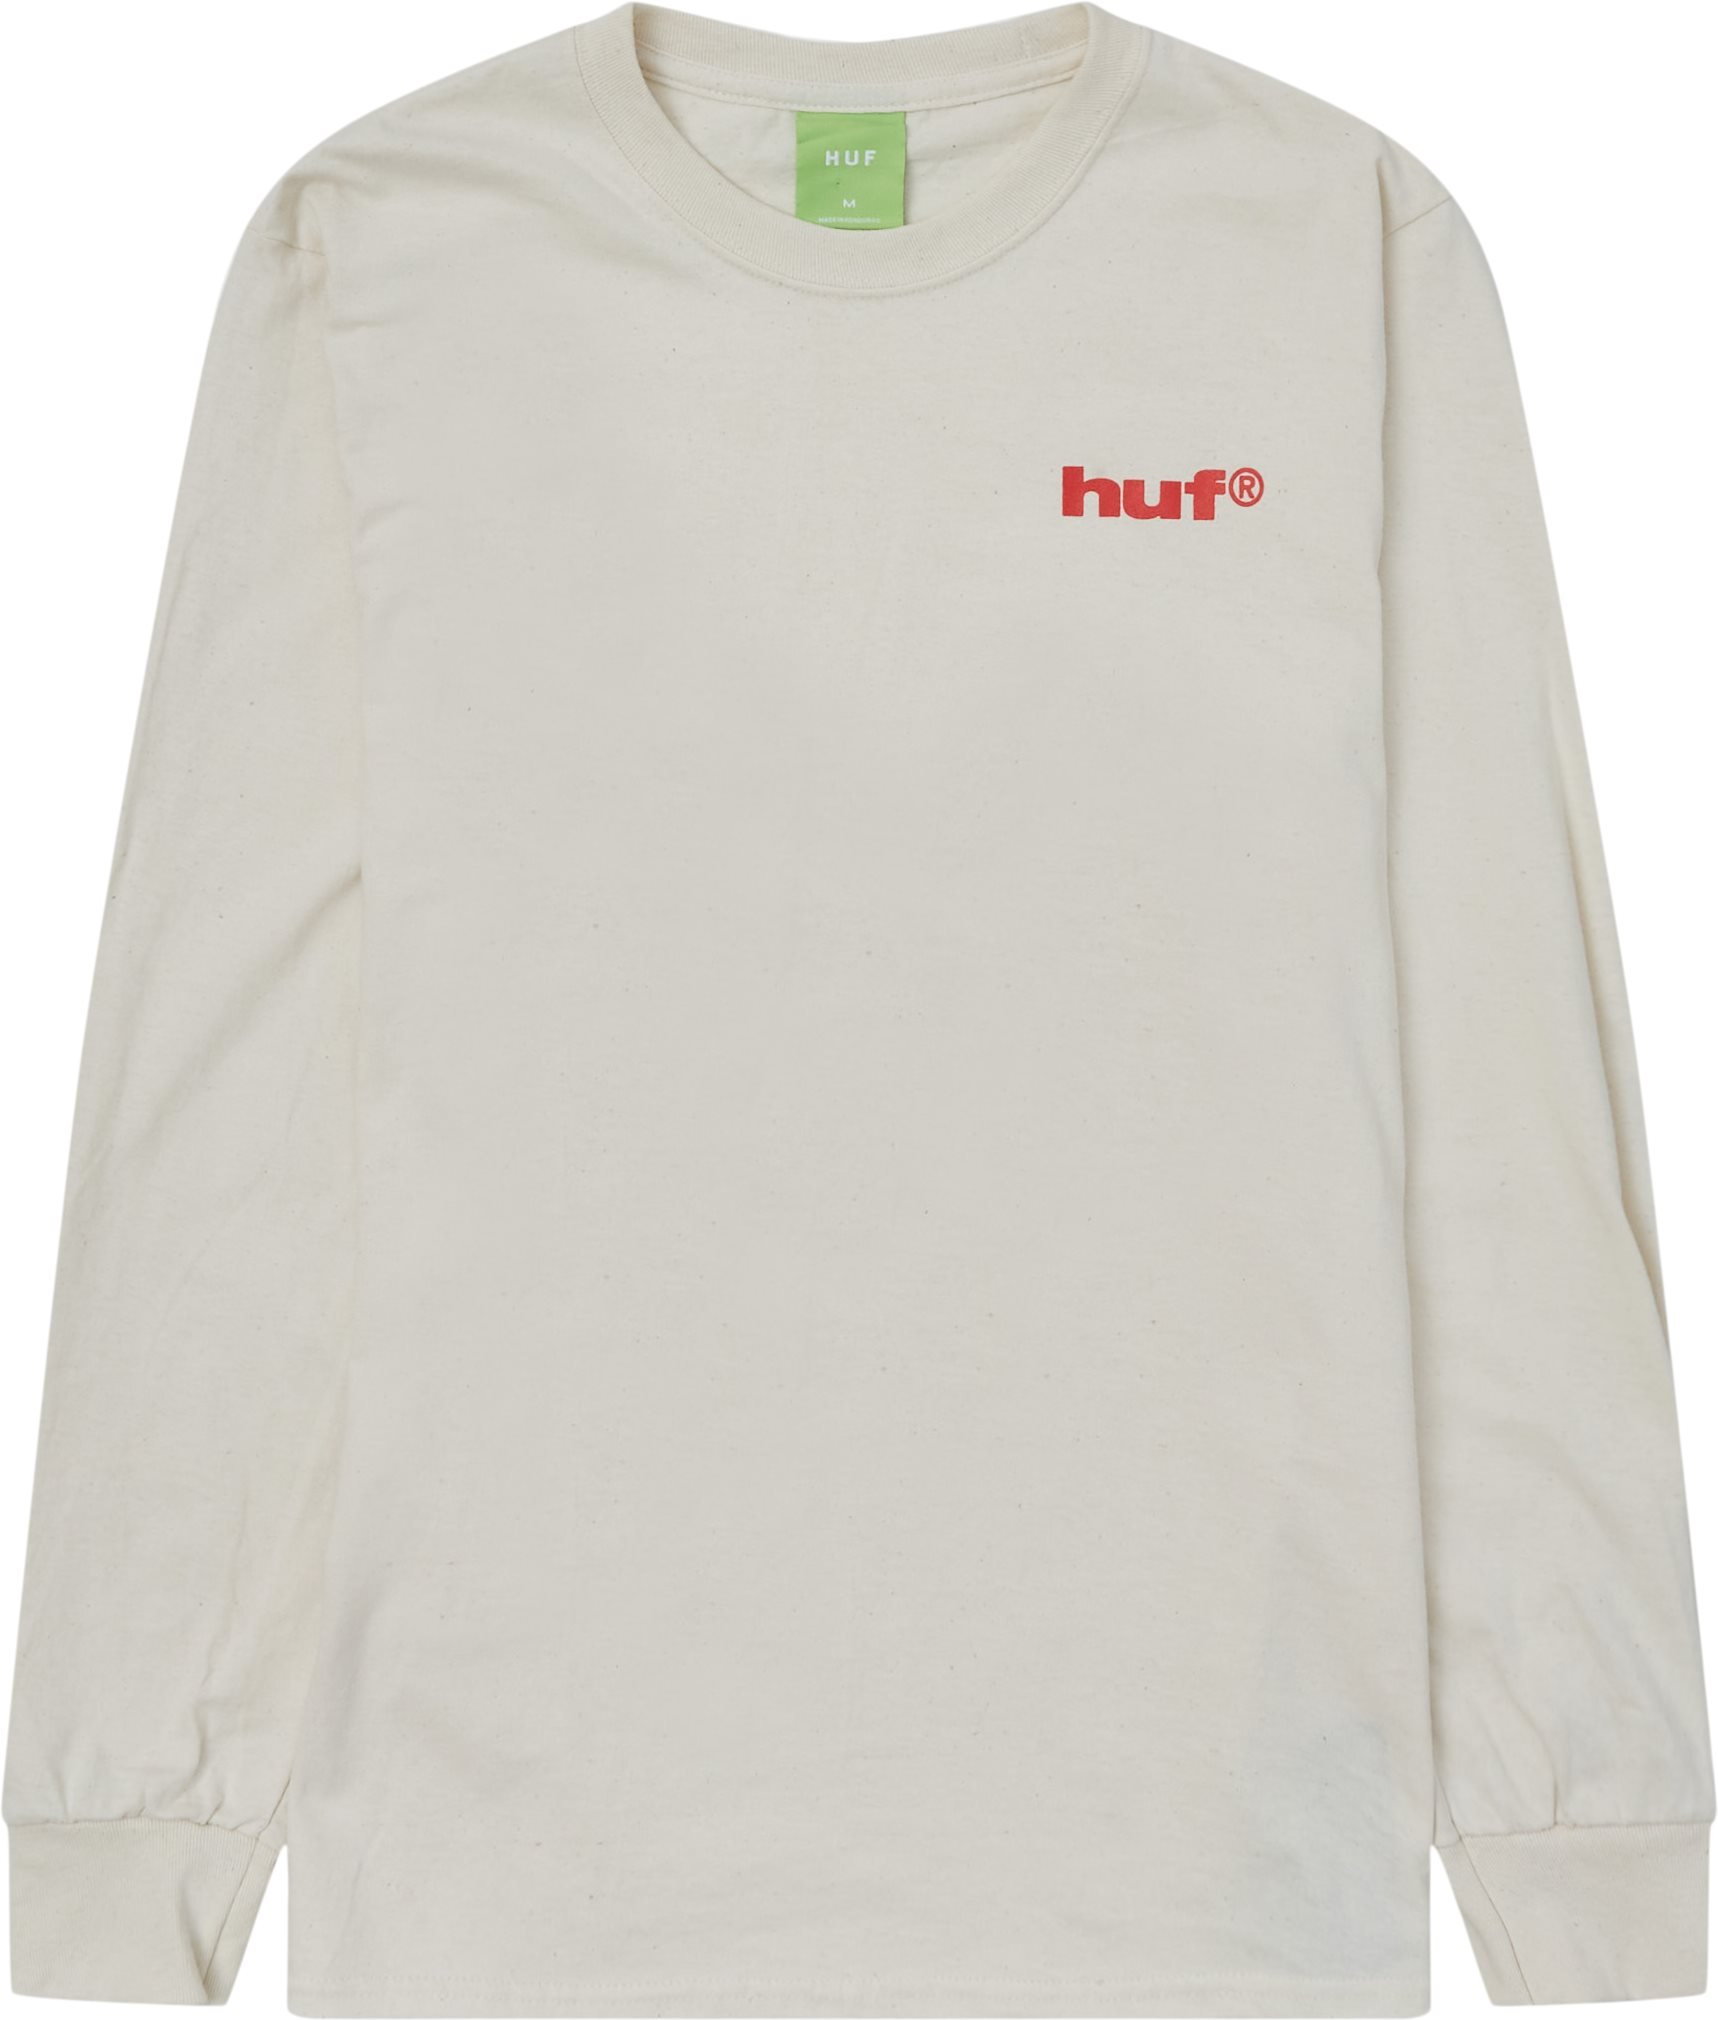 Seductive L/æ Tee - T-shirts - Regular fit - Hvid